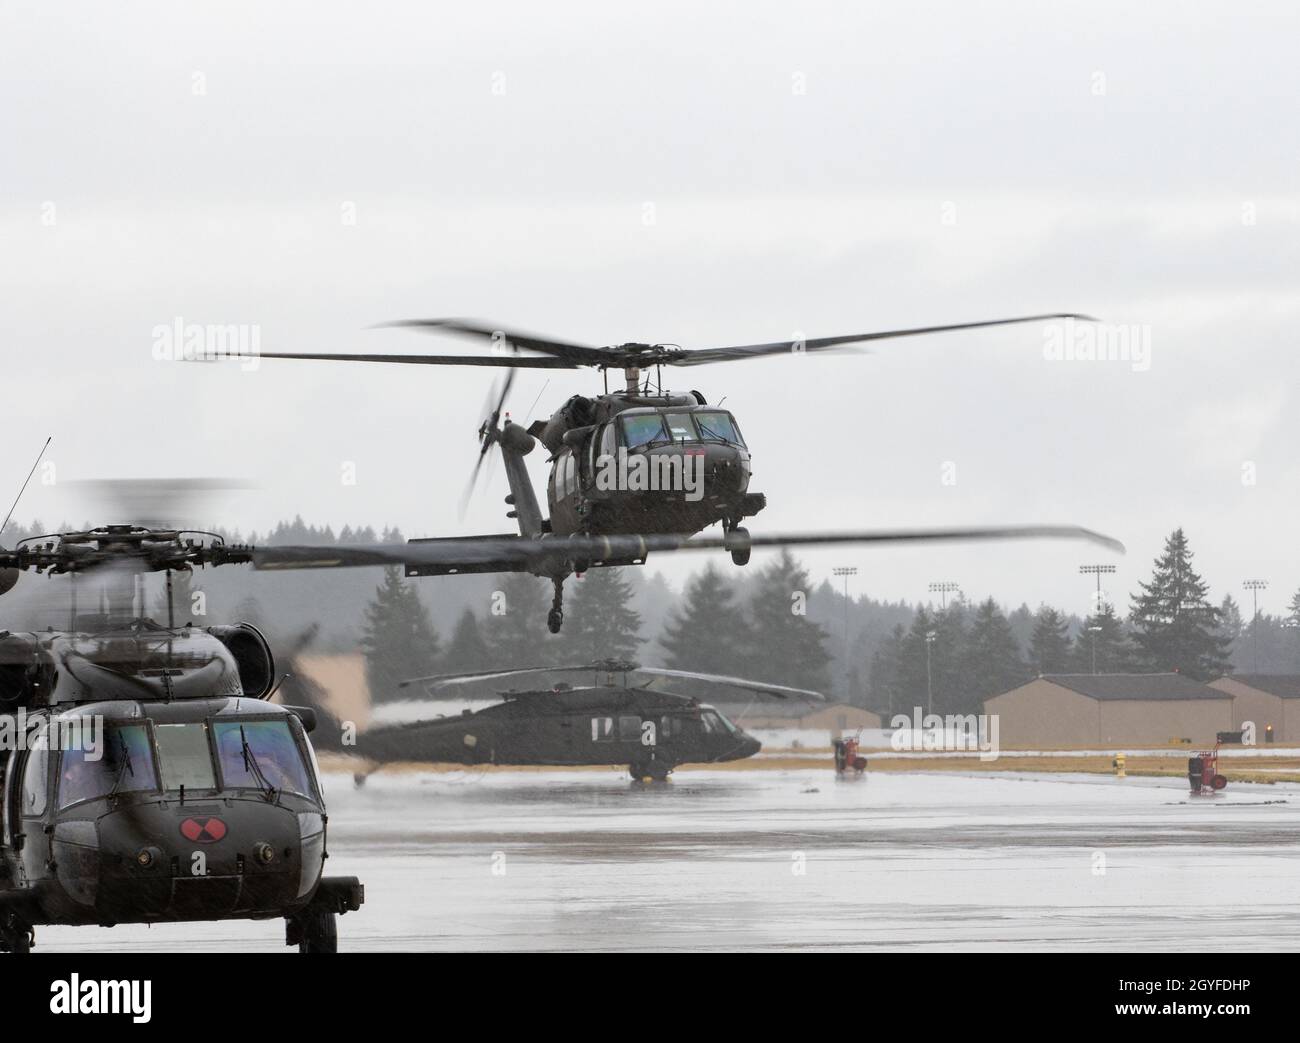 UH-60 elicotteri Black Hawk assegnati a 2-158 Assault Helicopter Battaglione 'Warhawks', sedicesimo combattimento Aviazione Brigata, taxi alla base congiunta Lewis-McChord, Washington, il 5 ottobre 2021. Il battaglione trasportava soldati della Stryker Brigade Combat Team del 1-2 in un esercizio combinato di addestramento sulle armi volto ad aumentare la preparazione al combattimento per le operazioni di emergenza. (STATI UNITI Foto dell'esercito di Capt. Kyle Abraham, sedicesimo brigata dell'aviazione di combattimento) Foto Stock